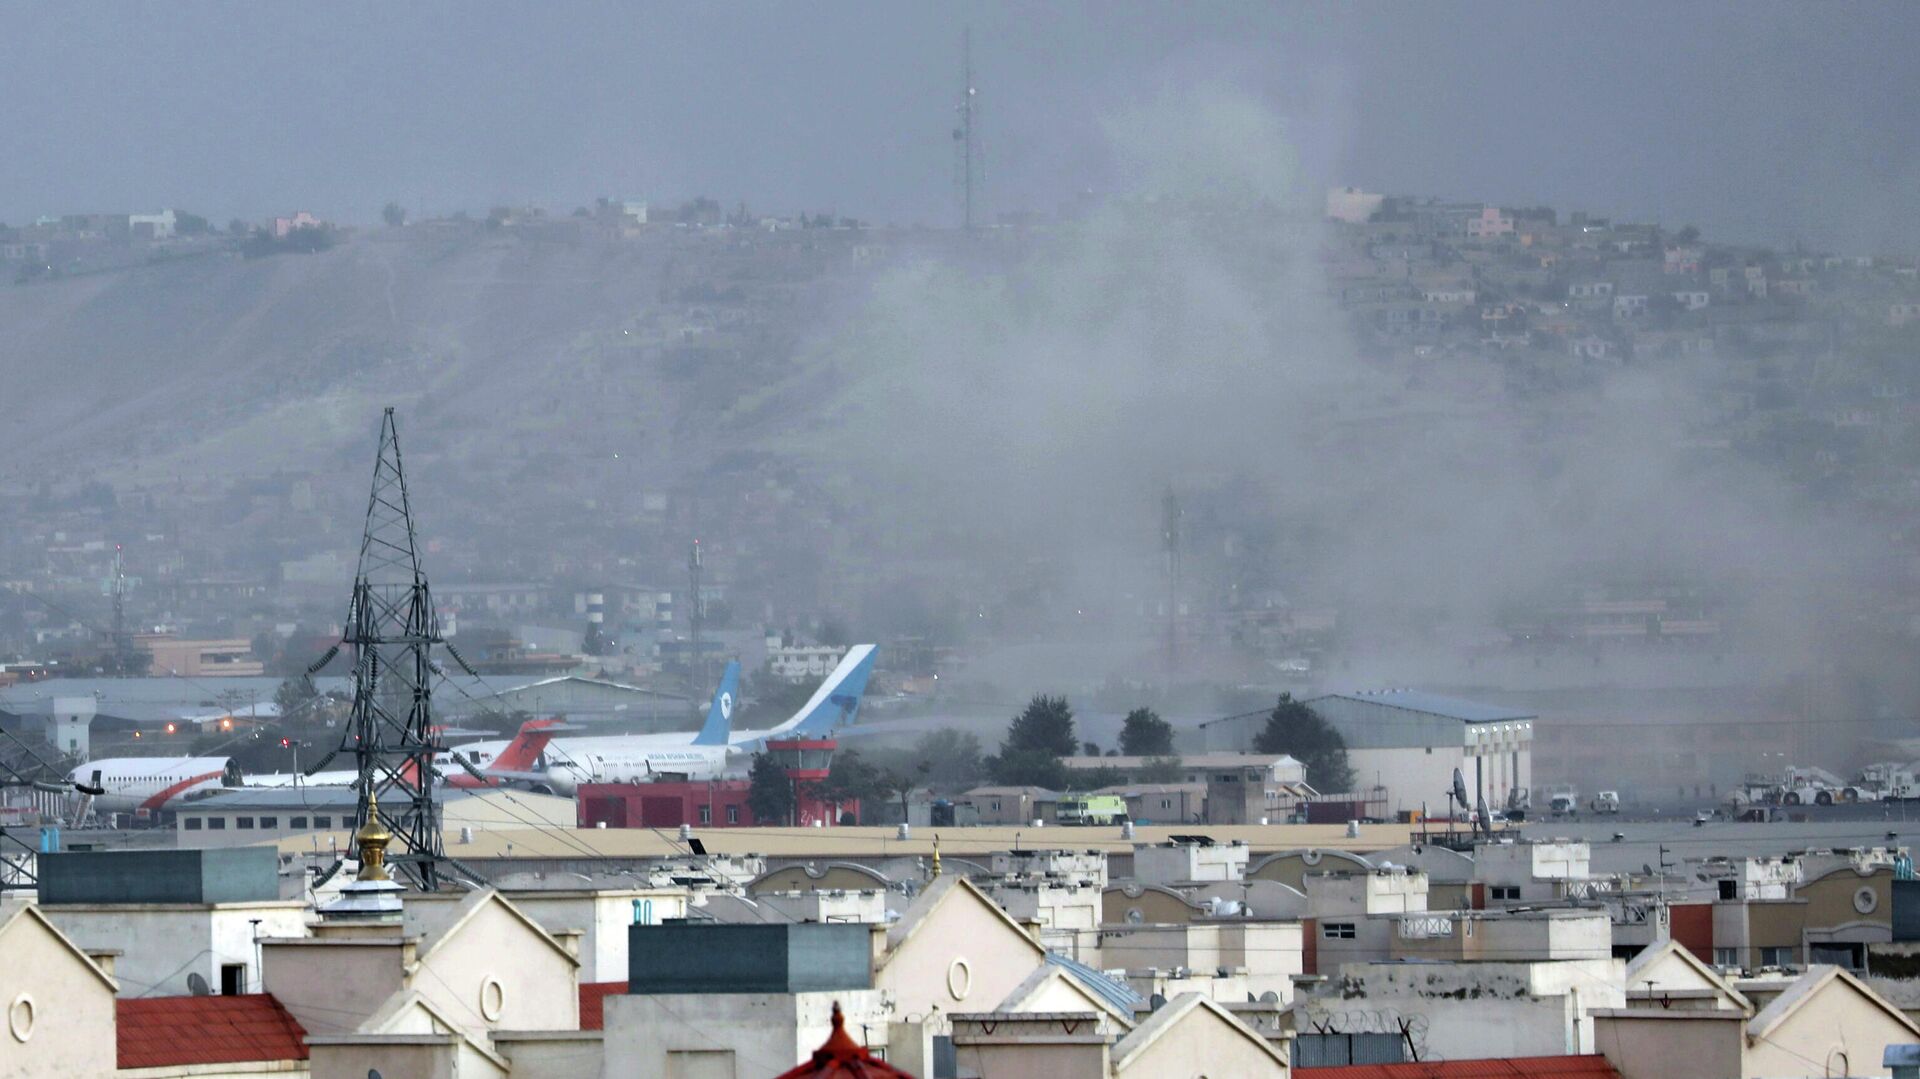  Около аэропорта в Кабуле прогремели три взрыва, Афганистан - РИА Новости, 1920, 26.08.2021